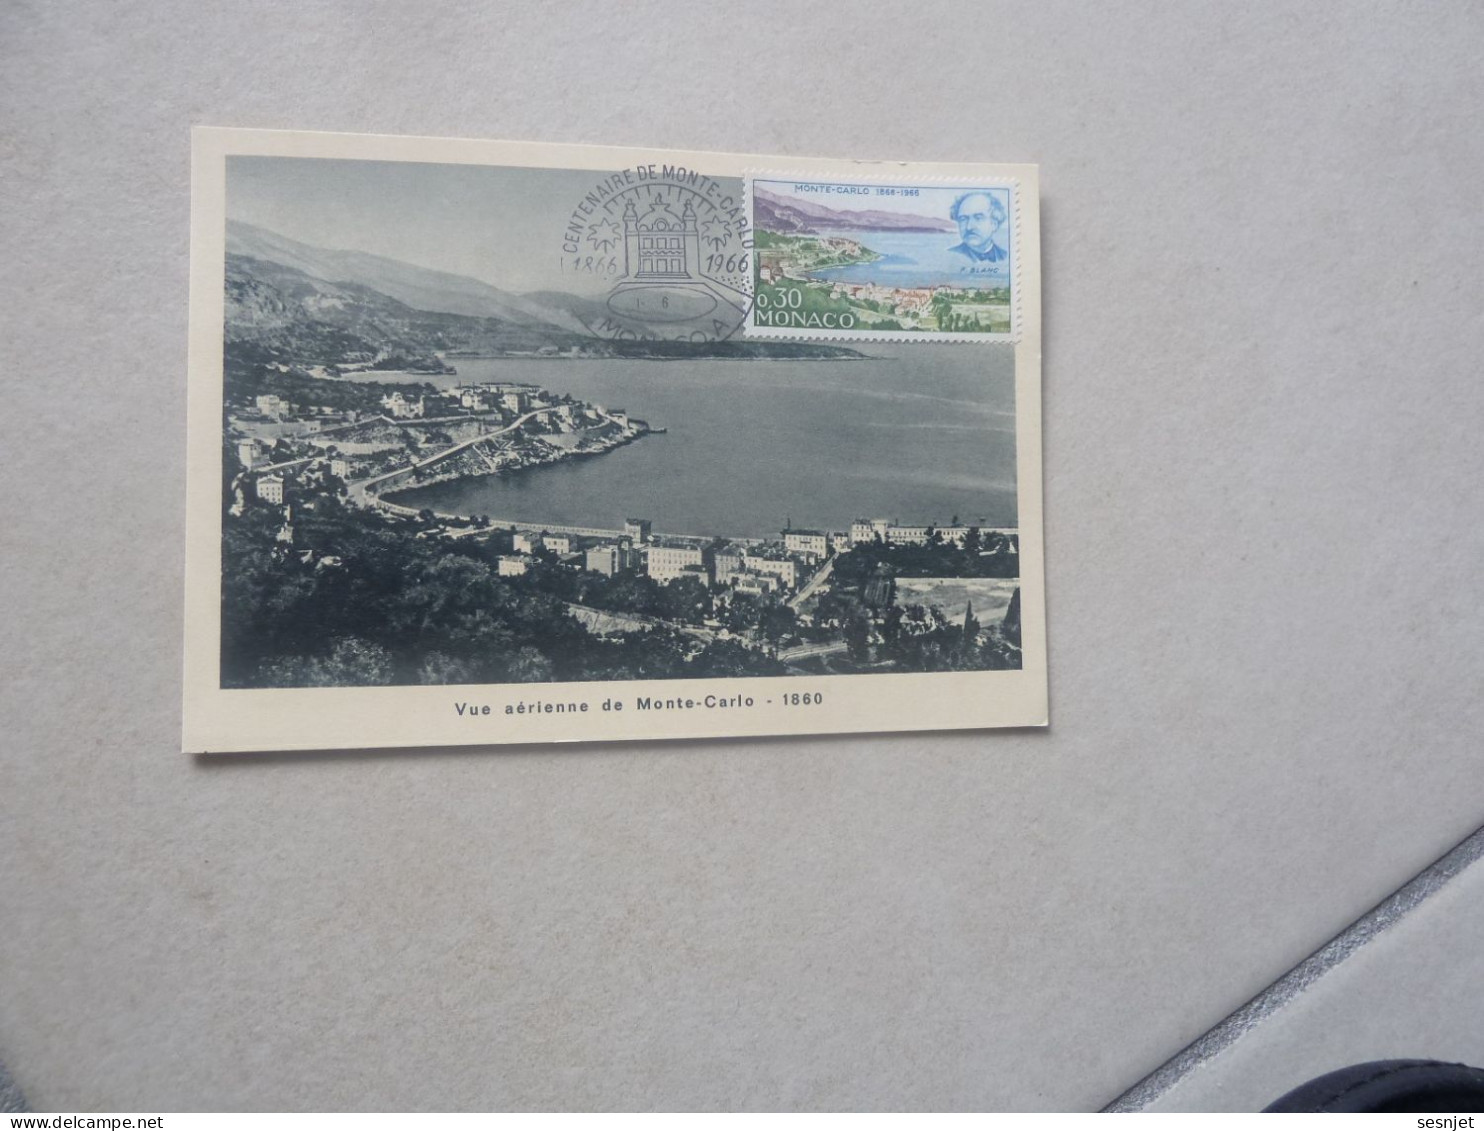 Monaco - Vue Aérienne De Monte-Carlo (1860) - 0f.30 - Yt 697 - Carte Premier Jour D'Emission - Année 1966 - - Maximumkaarten